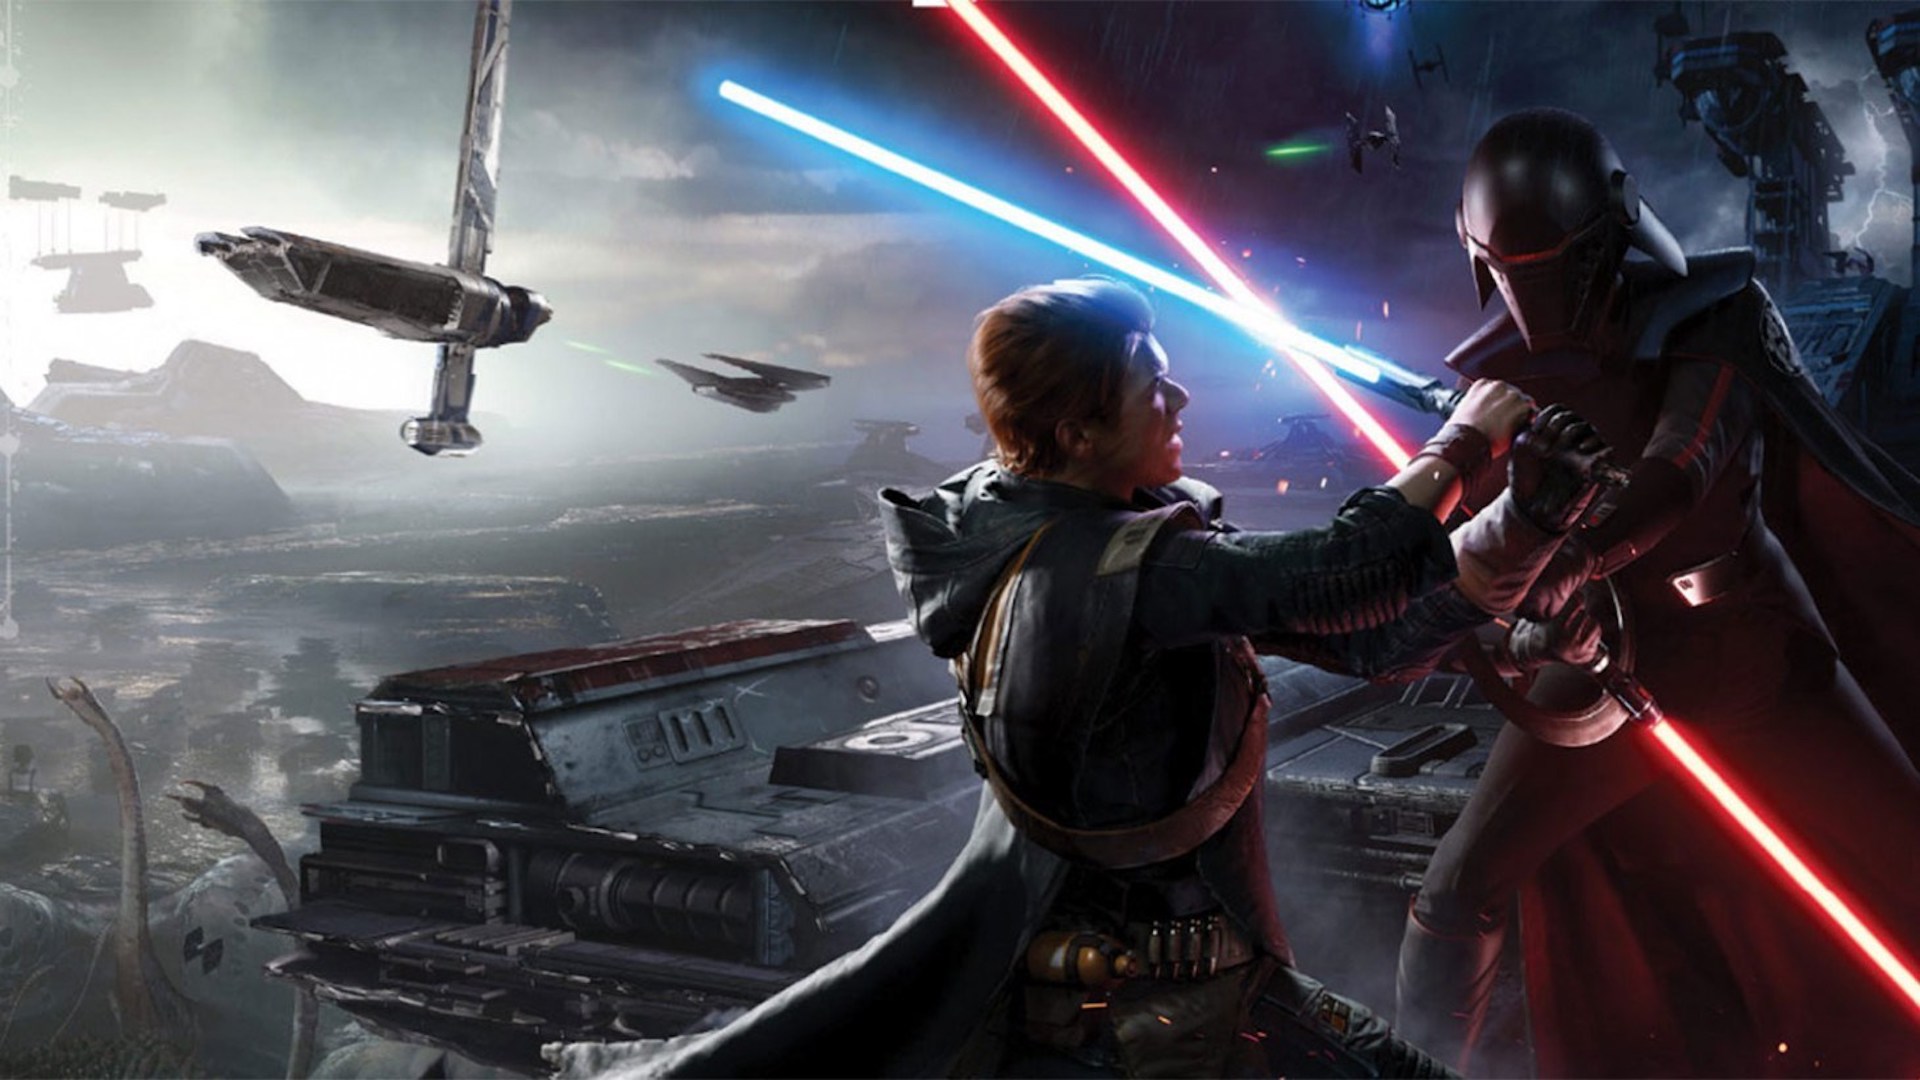 Star Wars Jedi: Upadły zakon - poznaliśmy prawdopodobny tytuł kontynuacji gry z 2019 roku